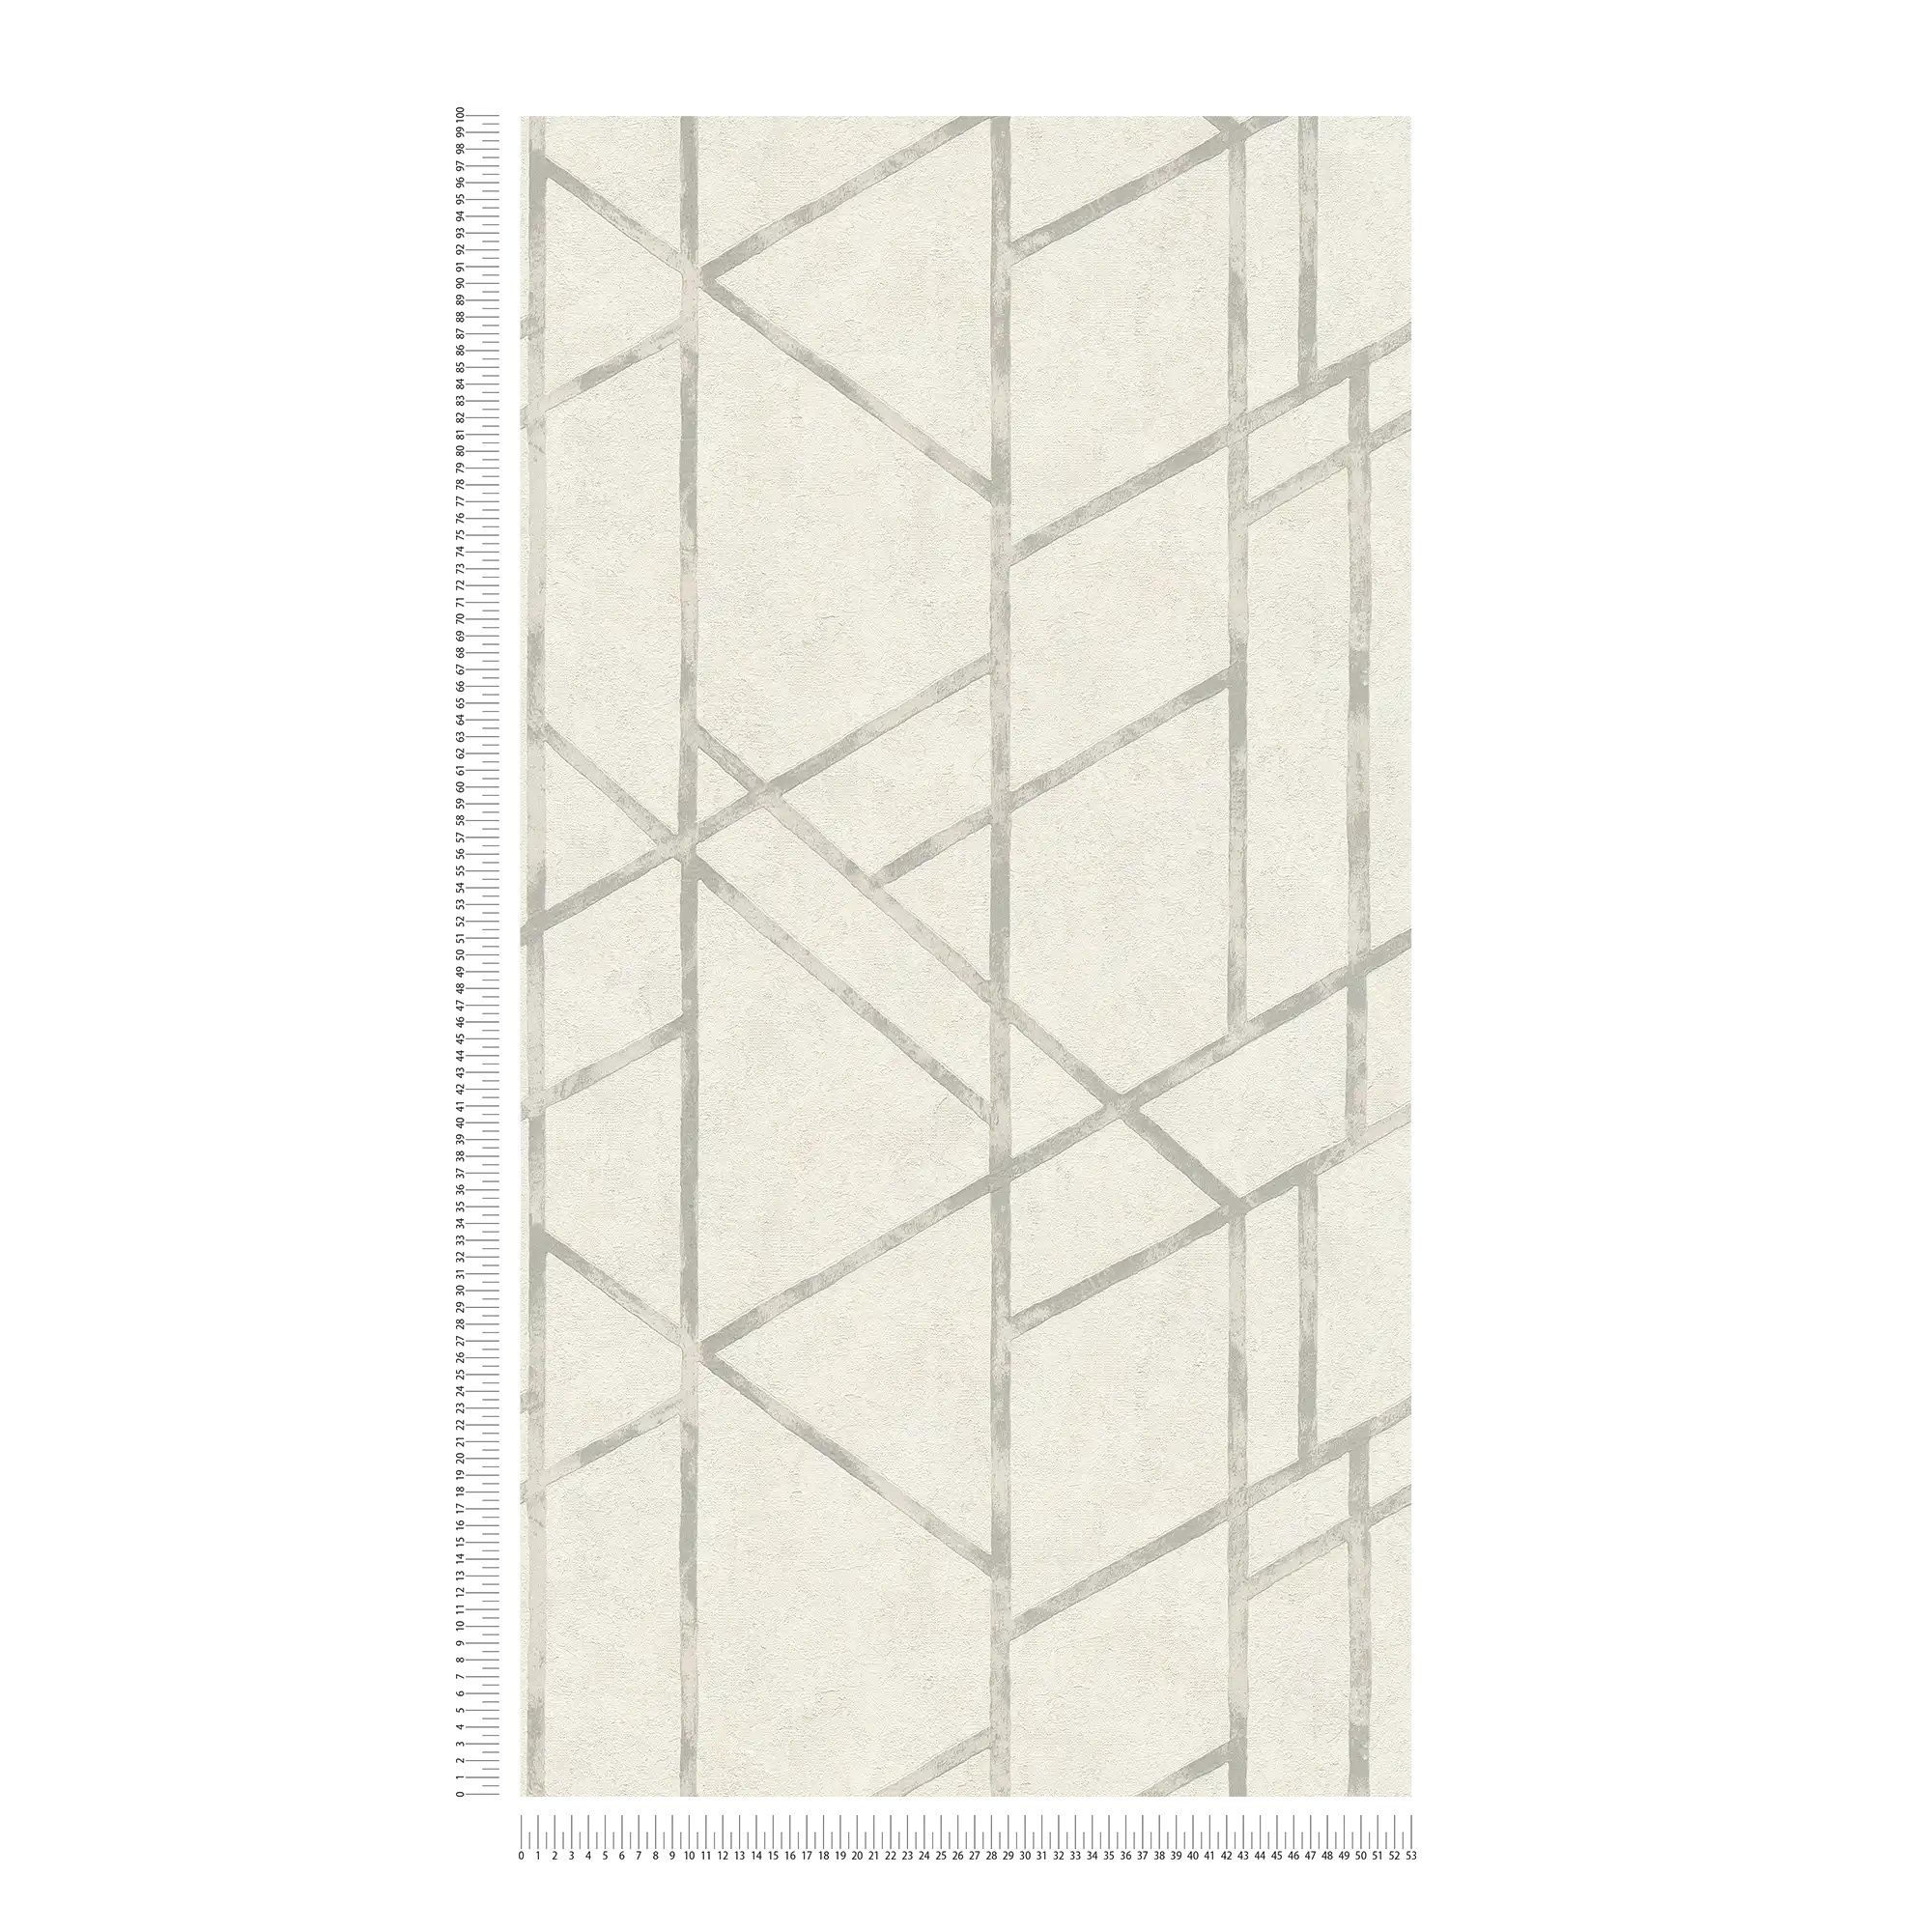             Papier peint béton avec motif graphique argenté - argent, blanc
        